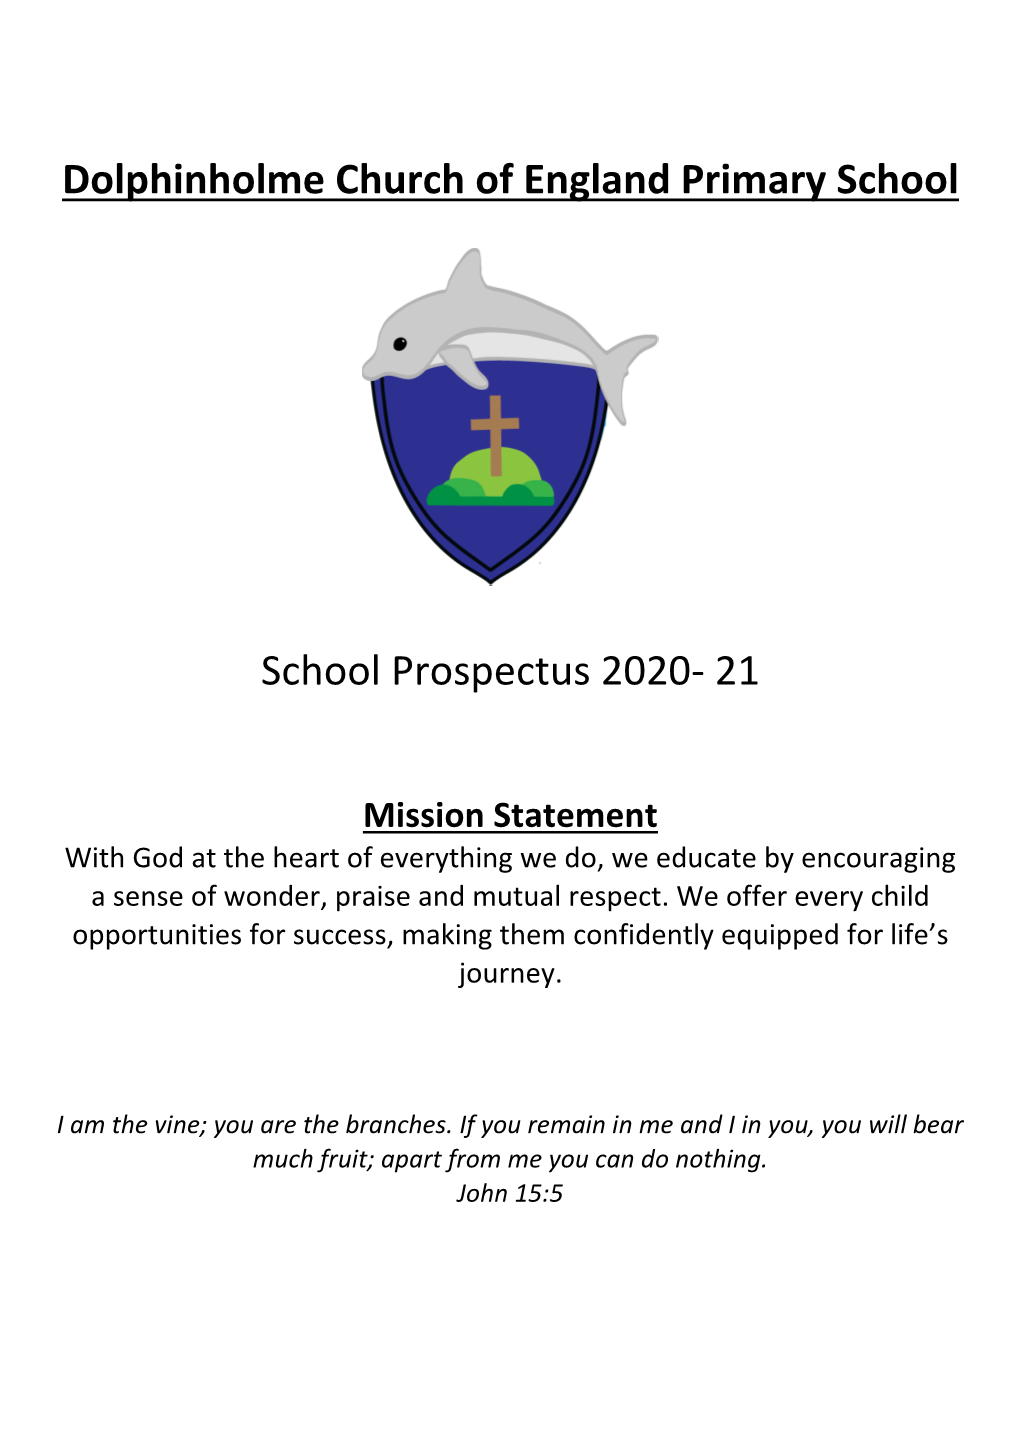 Prospectus 2020- 21